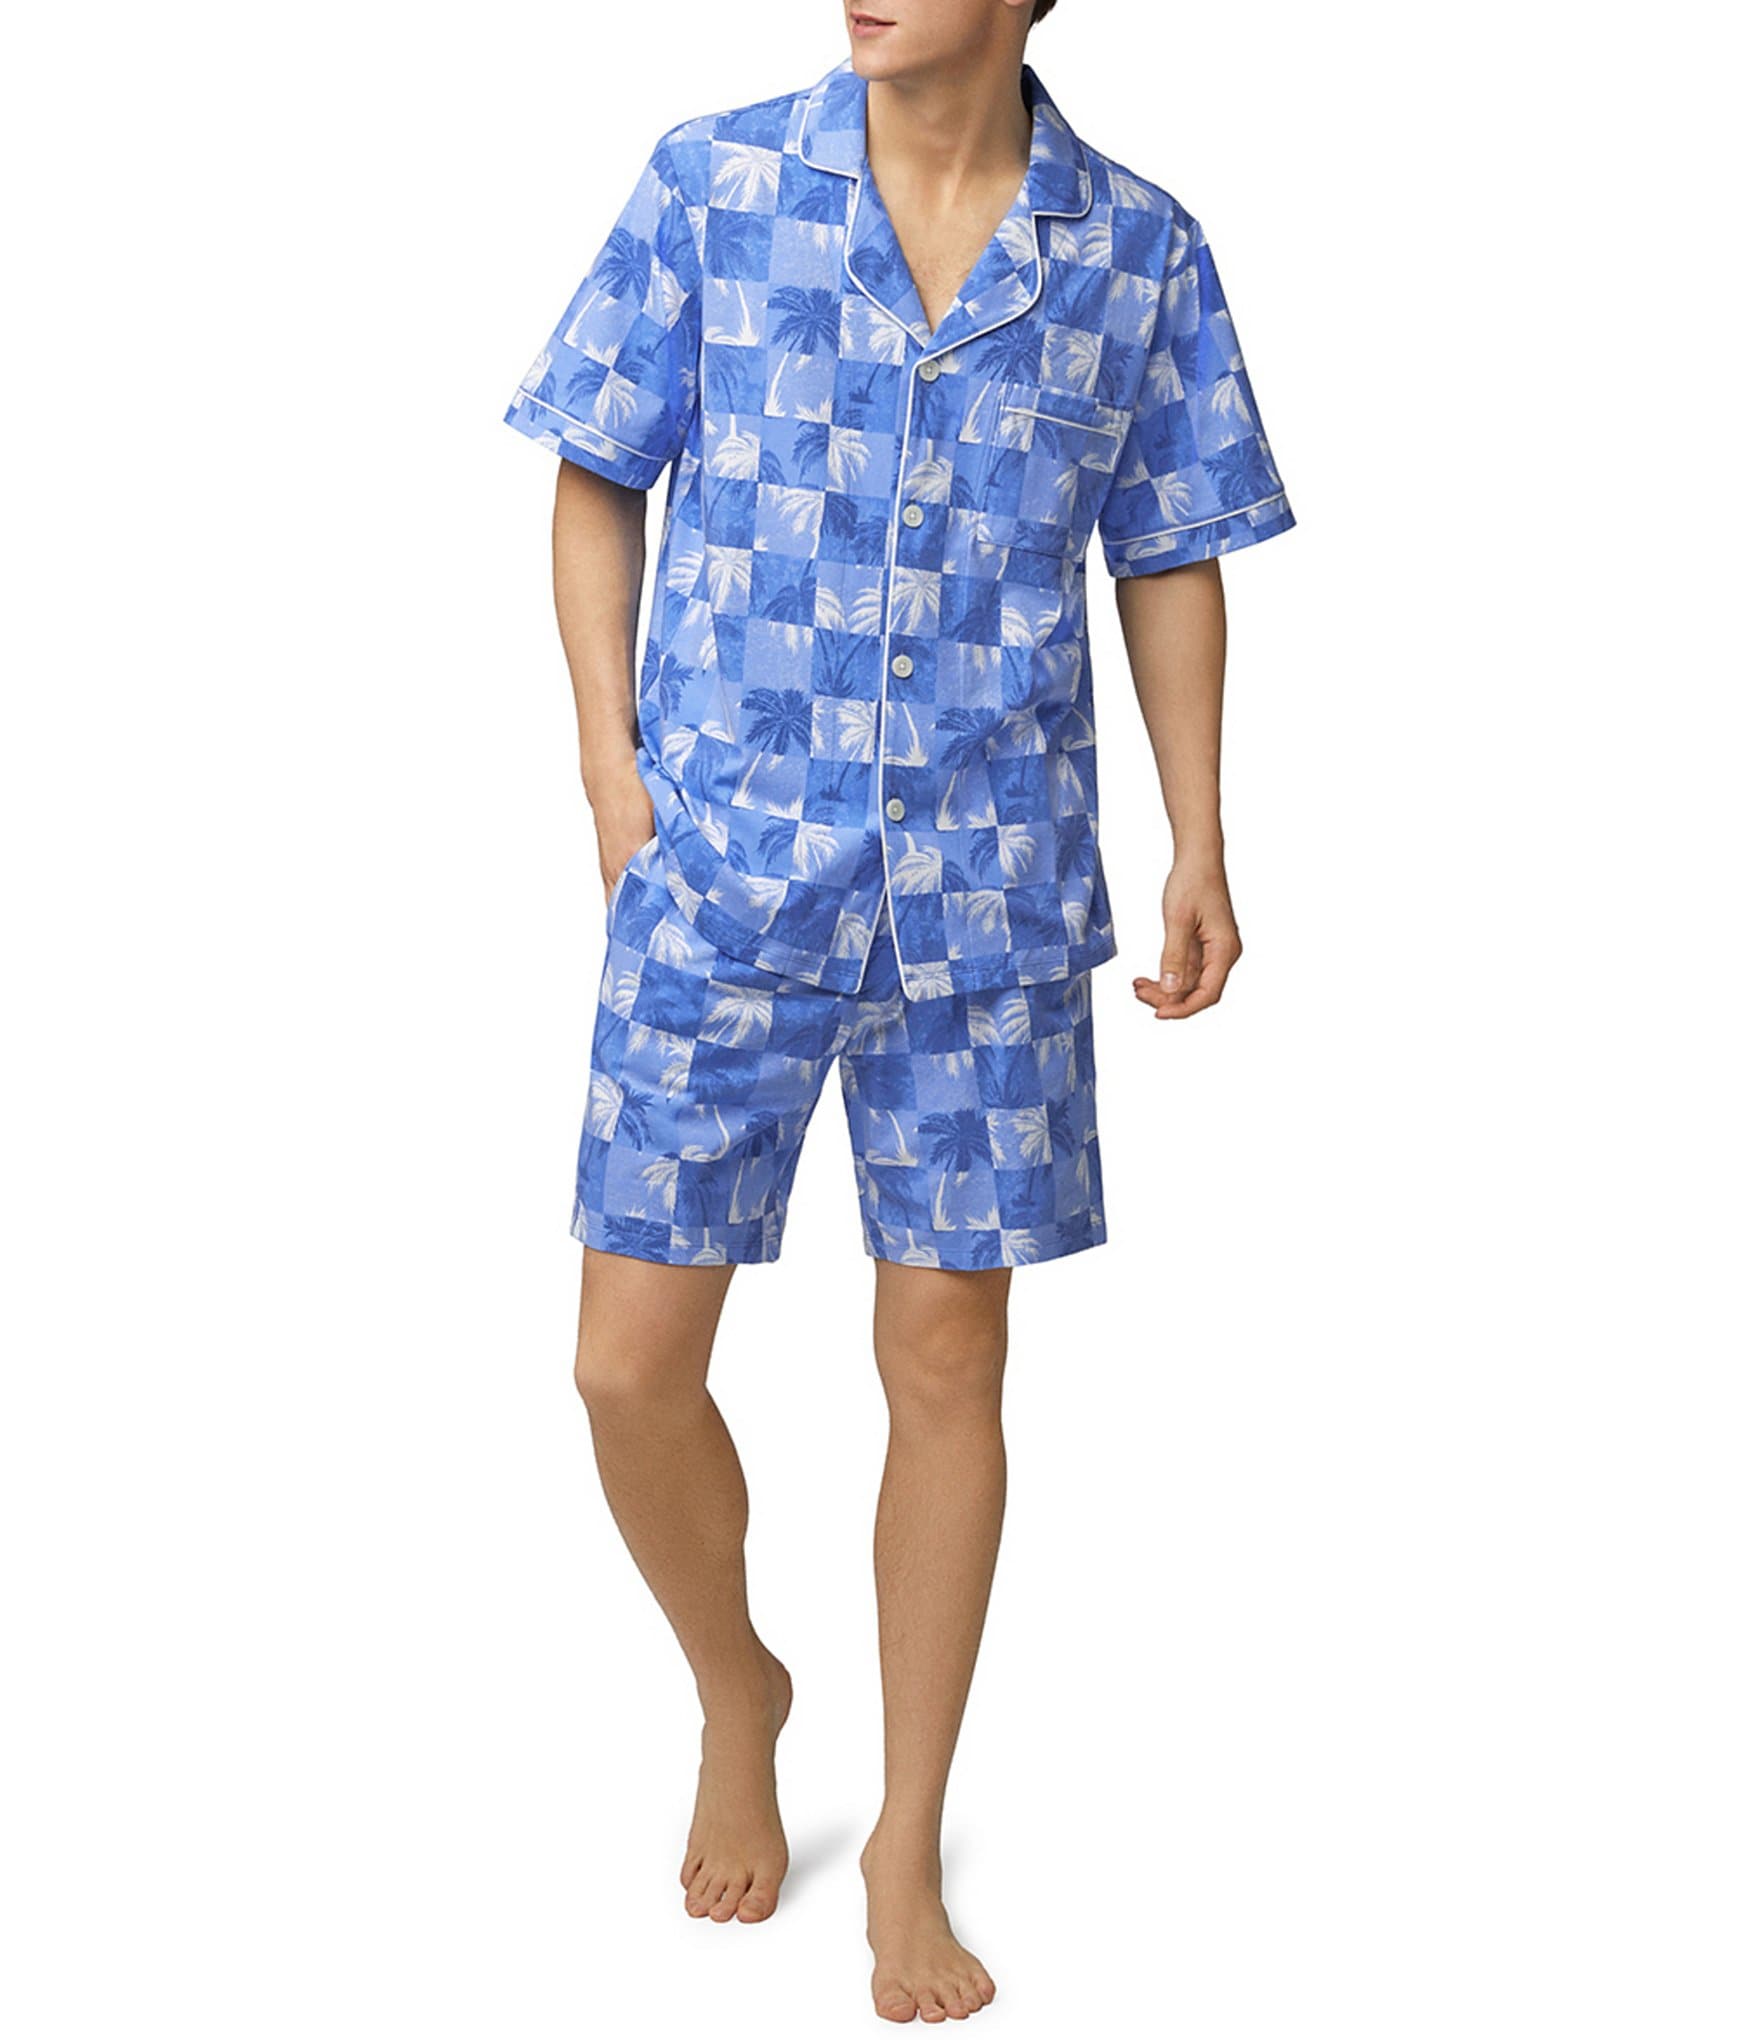 Bedhead Pajamas Cool Palms Short Sleeve Pajama Top & 8